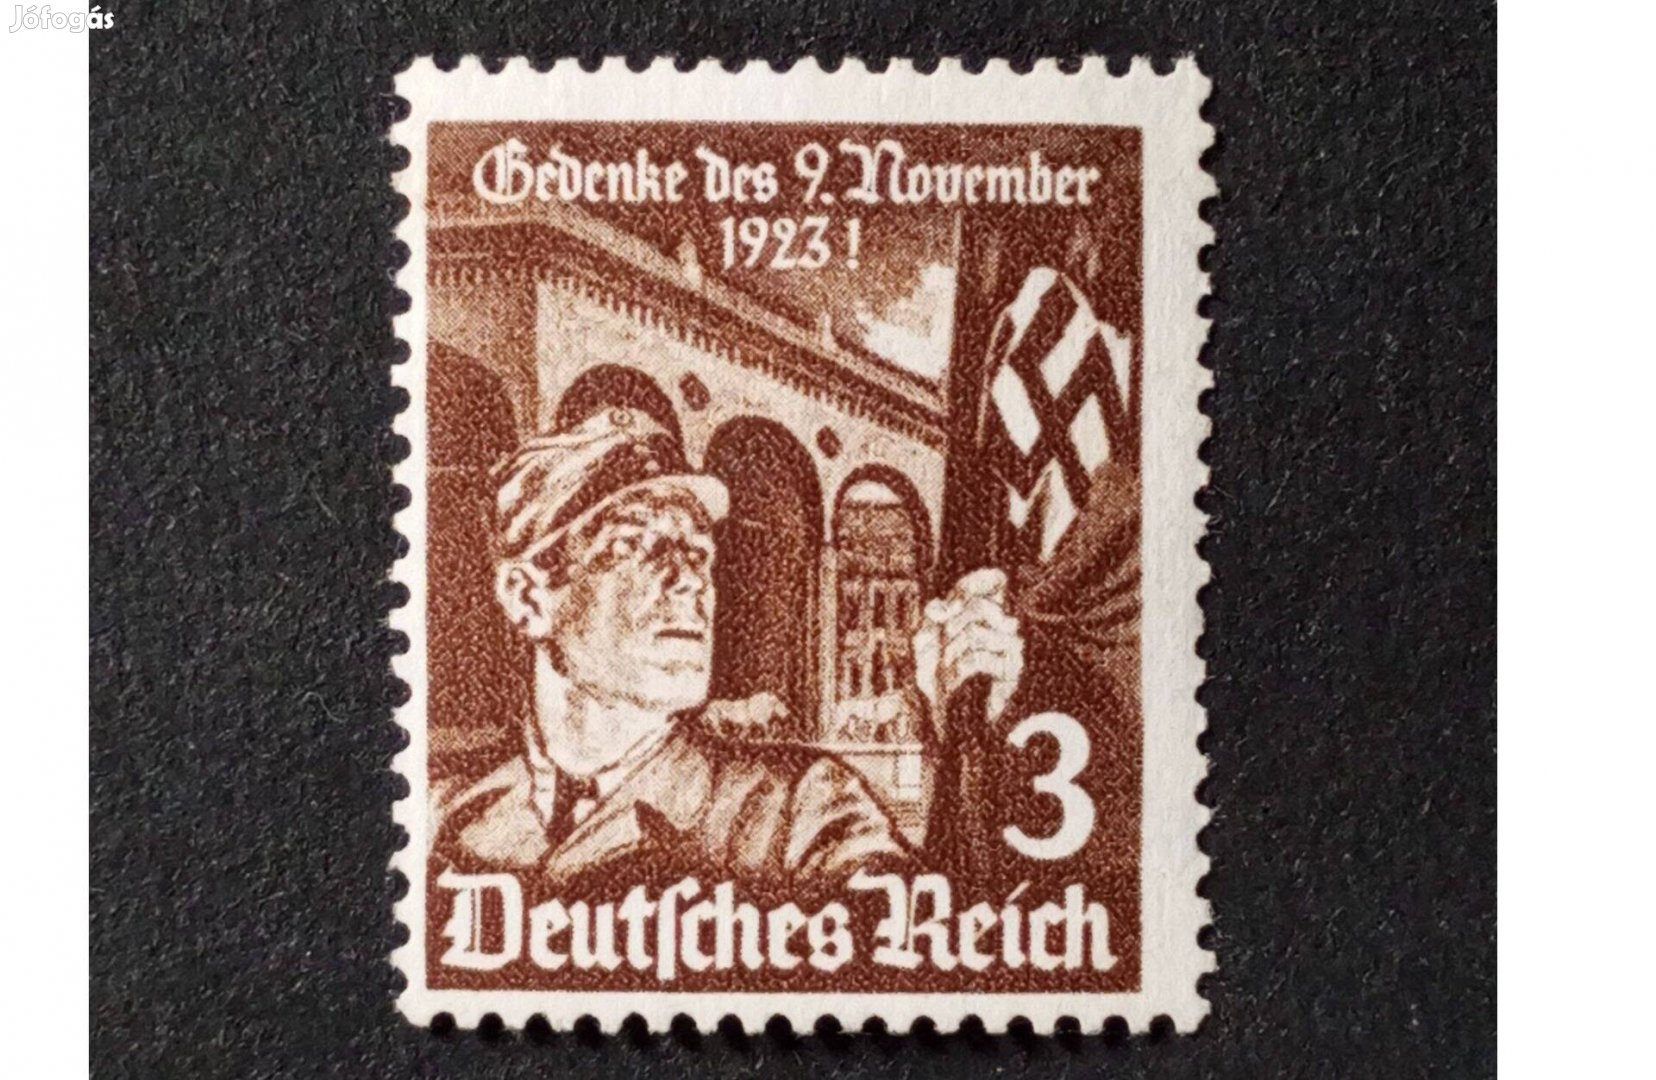 Deutsches Reich postatiszta bélyeg 1935. NSDAP évfordulója